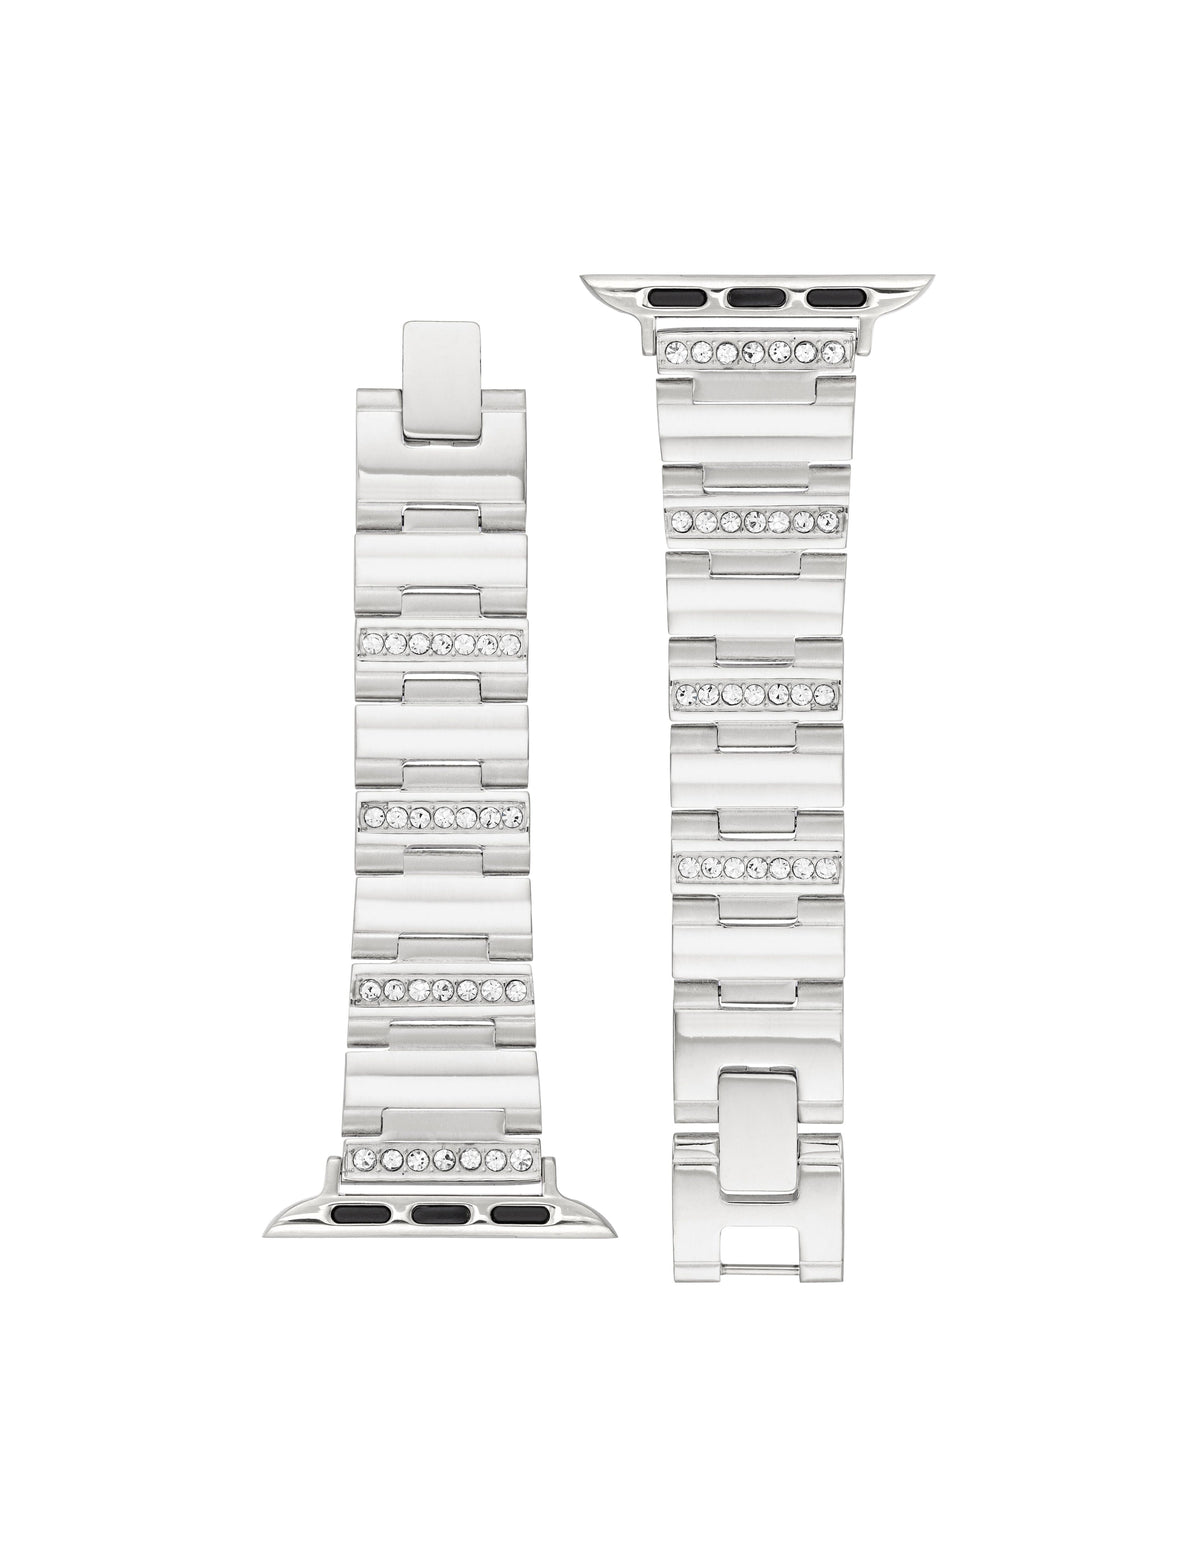 Anne Klein  Crystal Embellished Bracelet for Apple Watch®